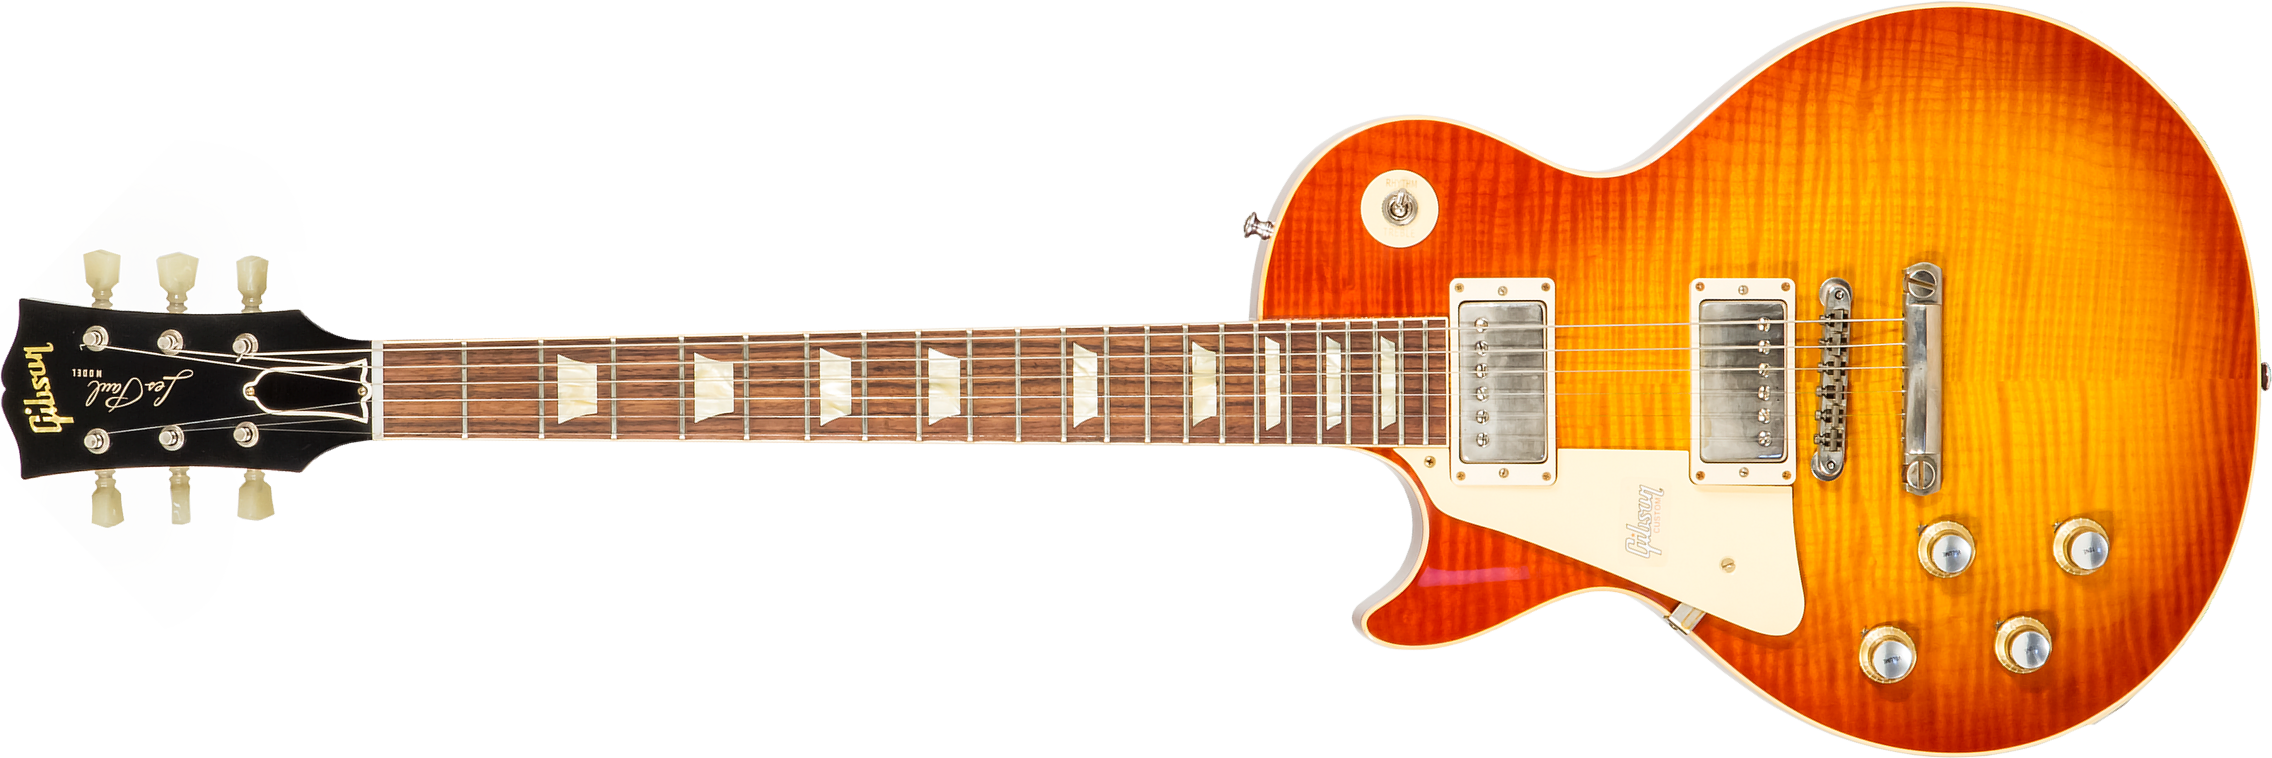 Gibson Custom Shop Les Paul Standard 1960 Reissue Lh Gaucher 2h Ht Rw #09122 - Vos Tangerine Burst - E-Gitarre für Linkshänder - Main picture